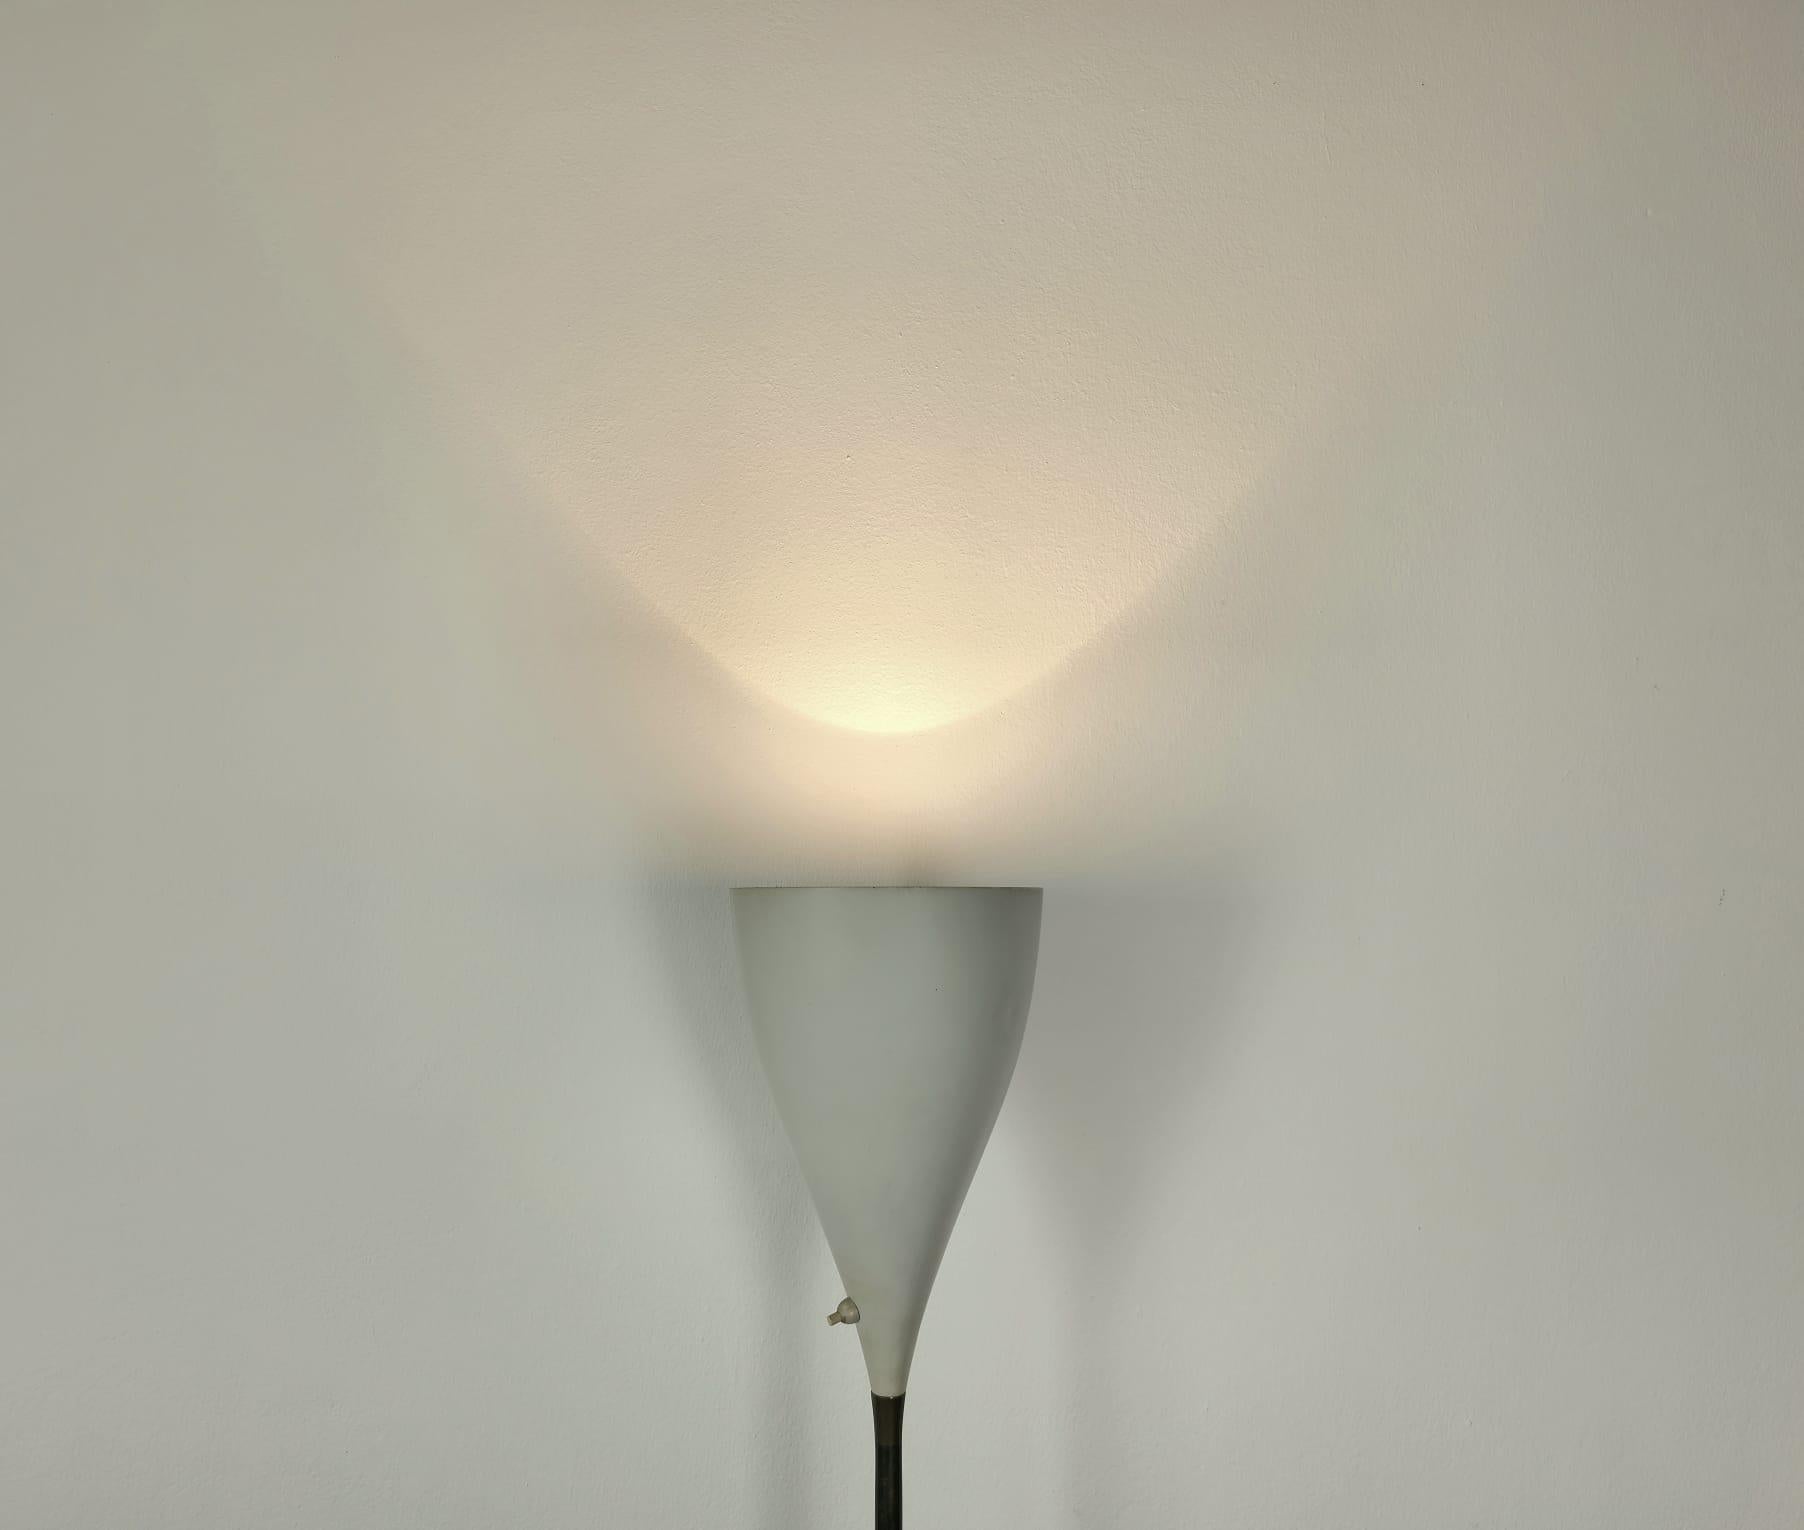 Seltene und elegante 1-Licht E27 Stehlampe, hergestellt in Italien in den 1950er Jahren.
Die Stehleuchte wurde mit einem runden Sockel aus weißem Marmor gefertigt, auf dem ein langer Messingstiel mit einem konischen Diffusor aus weiß emailliertem